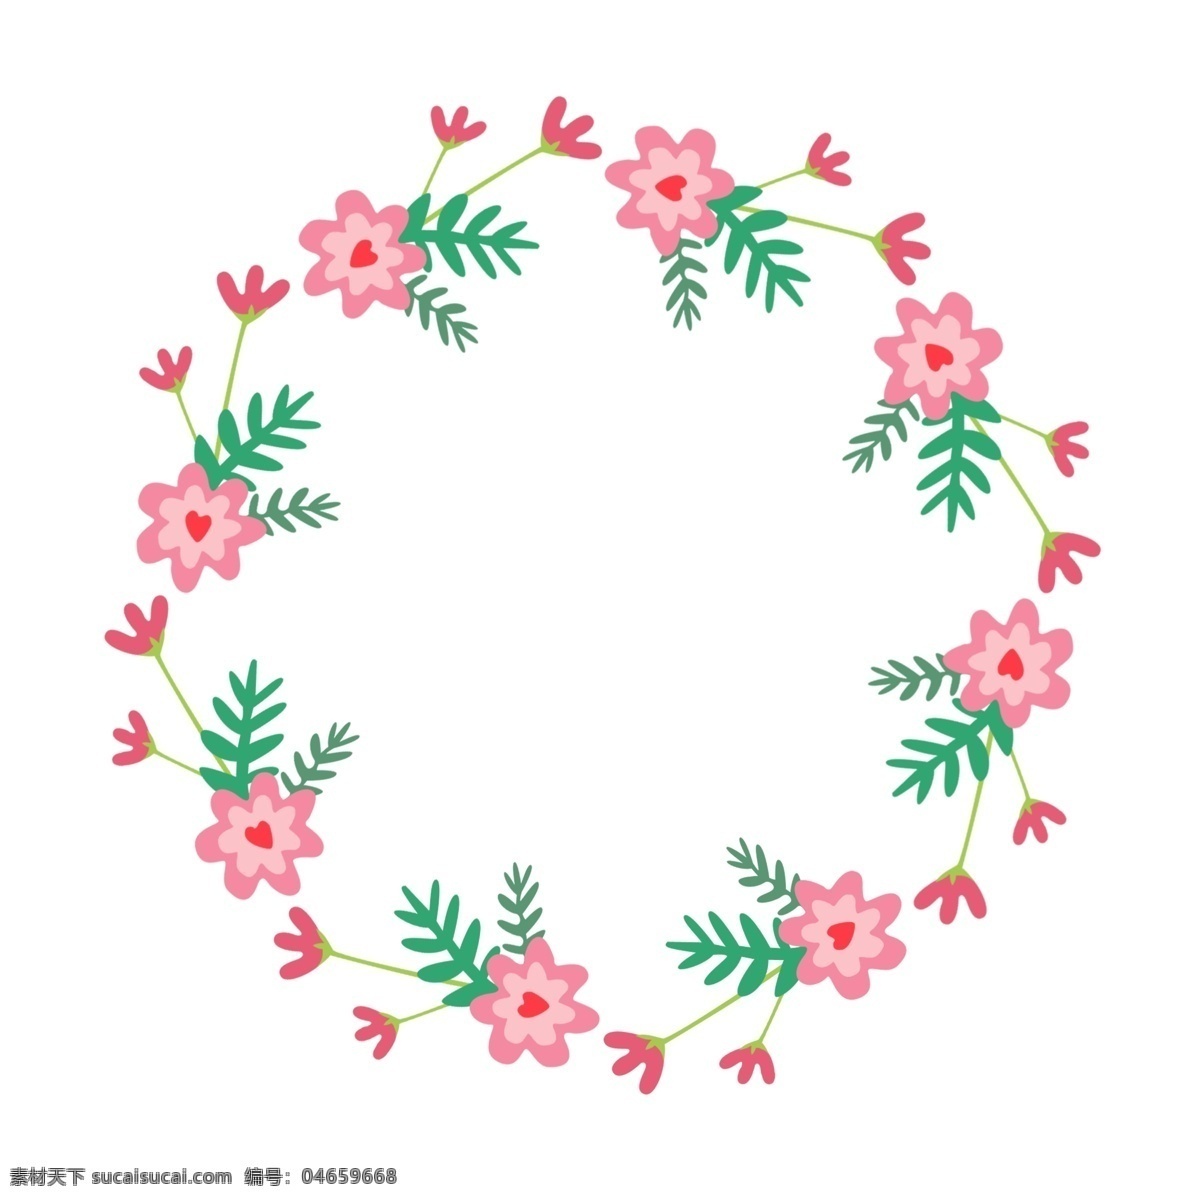 圆形 粉色 花朵 花环 圆形花环 粉色花朵装饰 花卉 鲜花 绿色植物装饰 绿叶花环 创意边框 圆环装饰